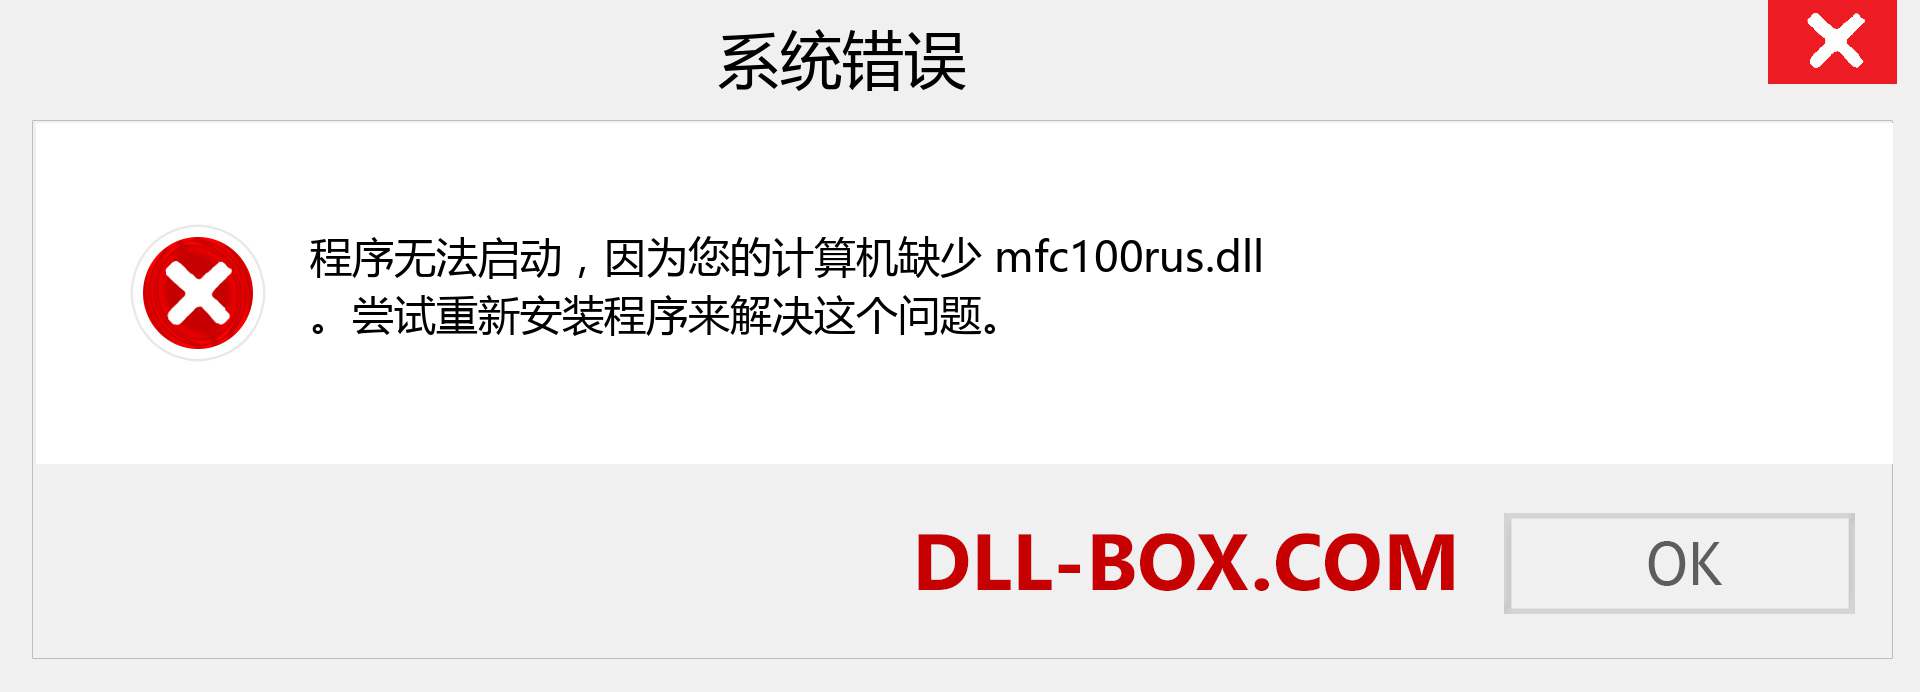 mfc100rus.dll 文件丢失？。 适用于 Windows 7、8、10 的下载 - 修复 Windows、照片、图像上的 mfc100rus dll 丢失错误